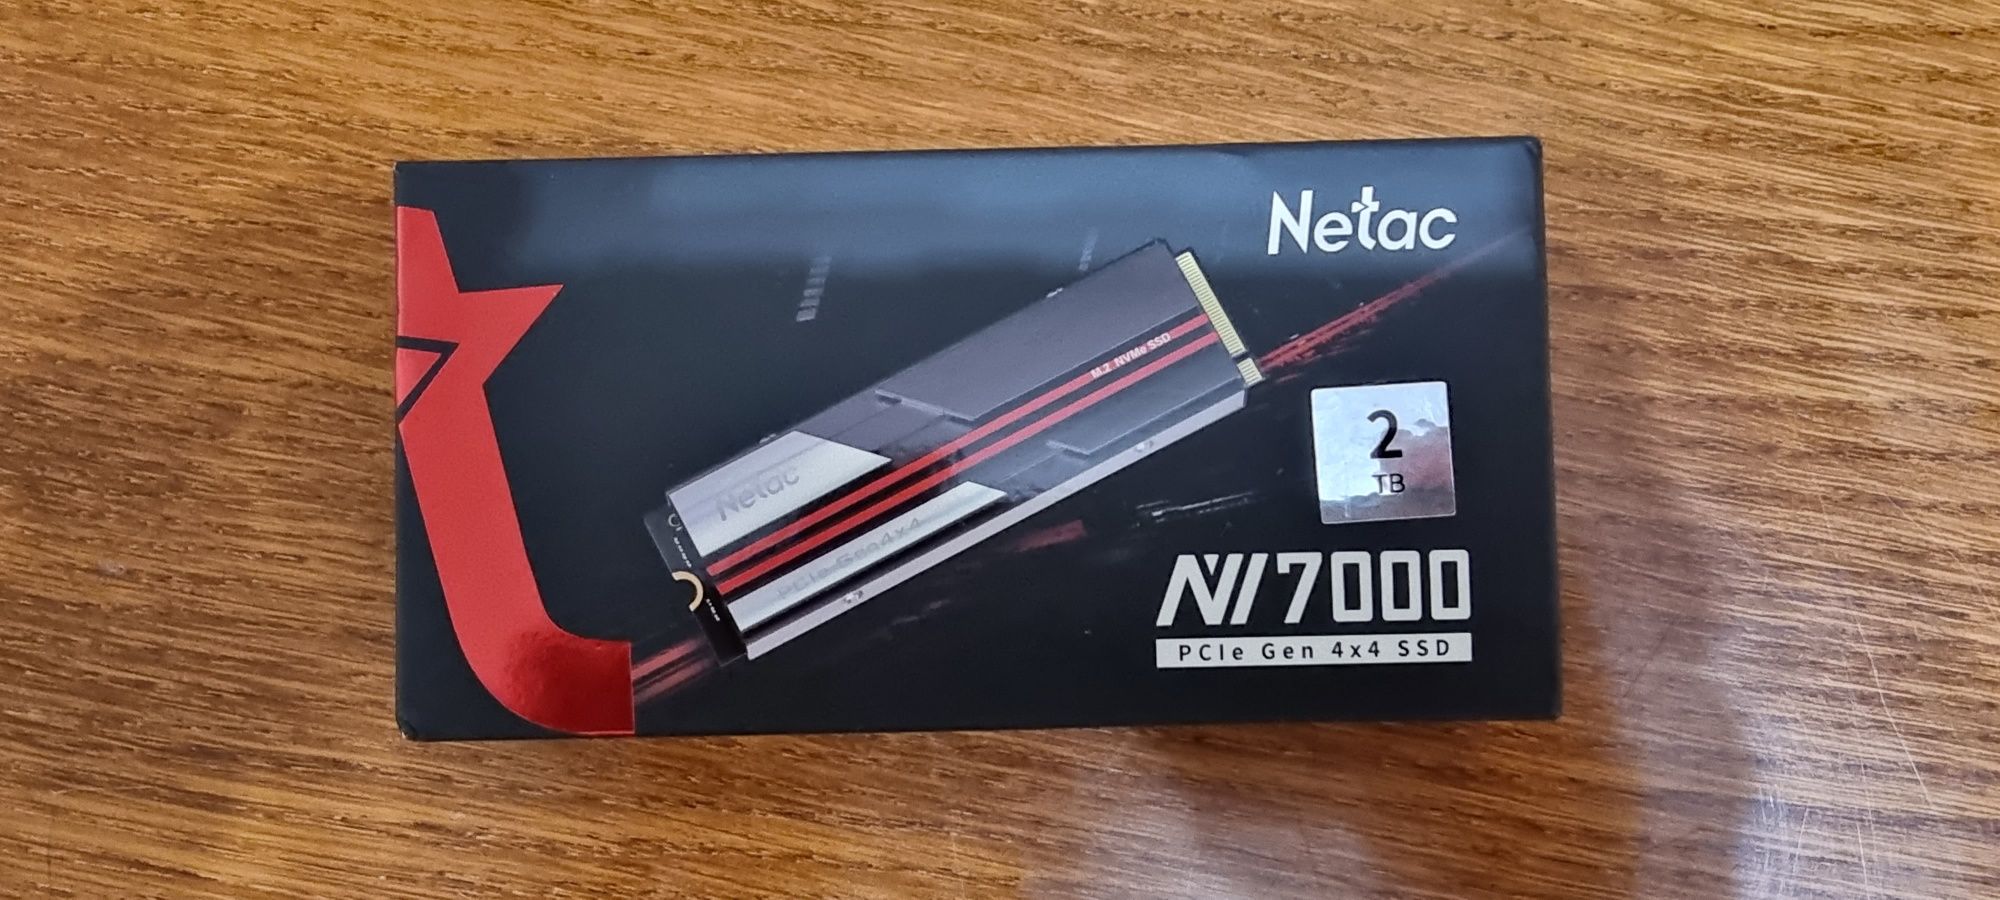 SSD NETAC NV 7000 2tb